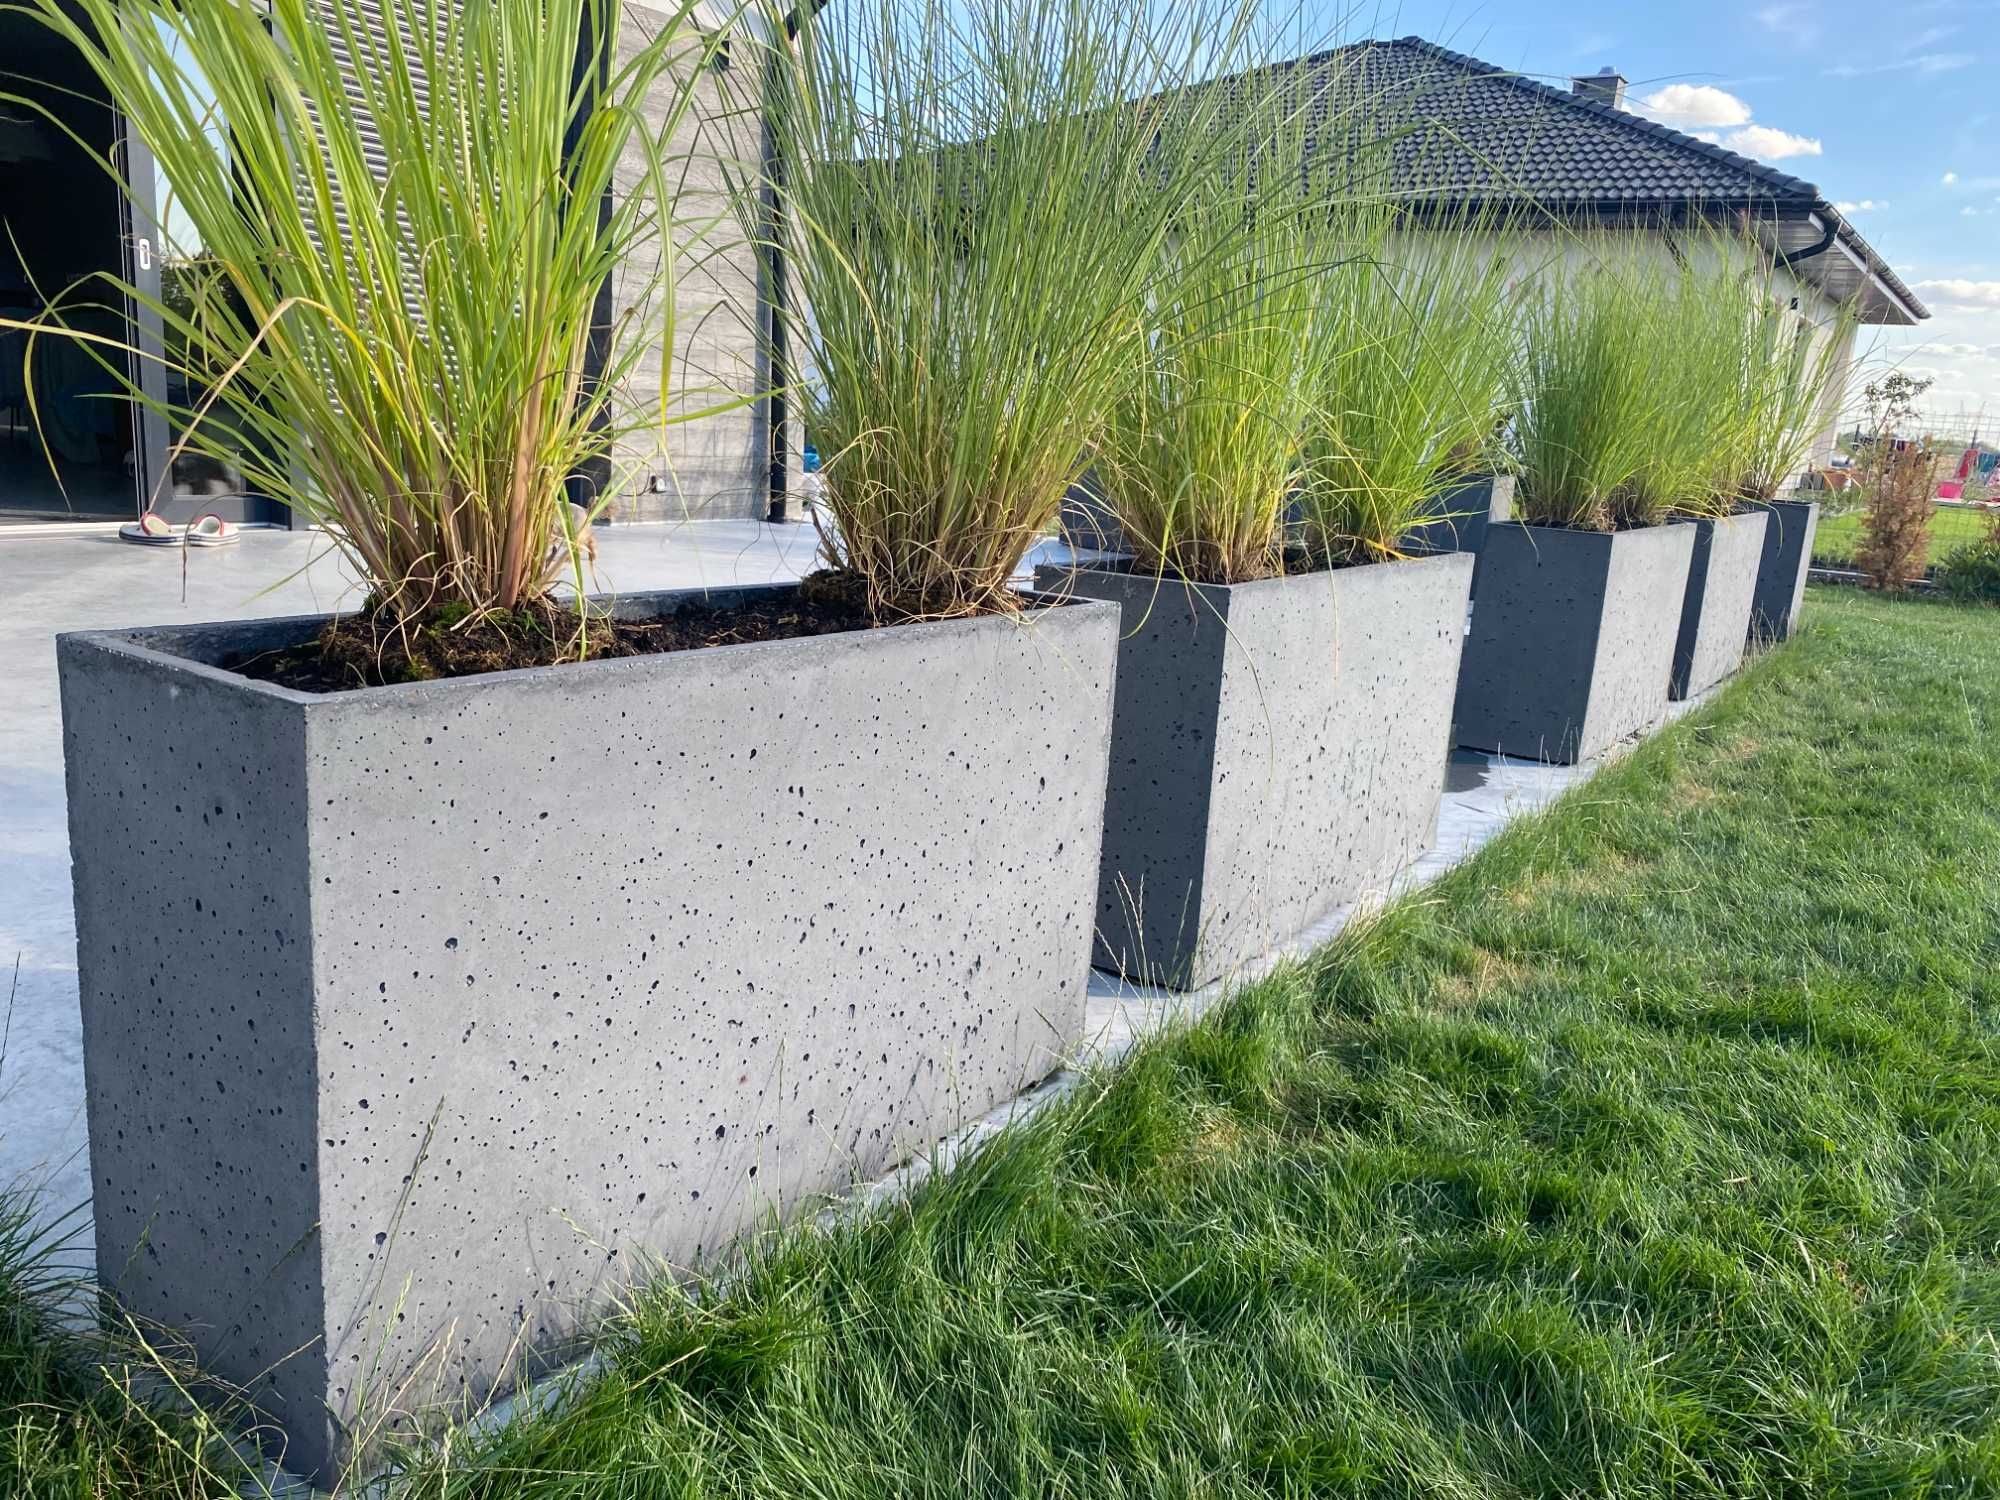 Donica betonowa 100x30x55 IRIS beton architektoniczny donice betonowe